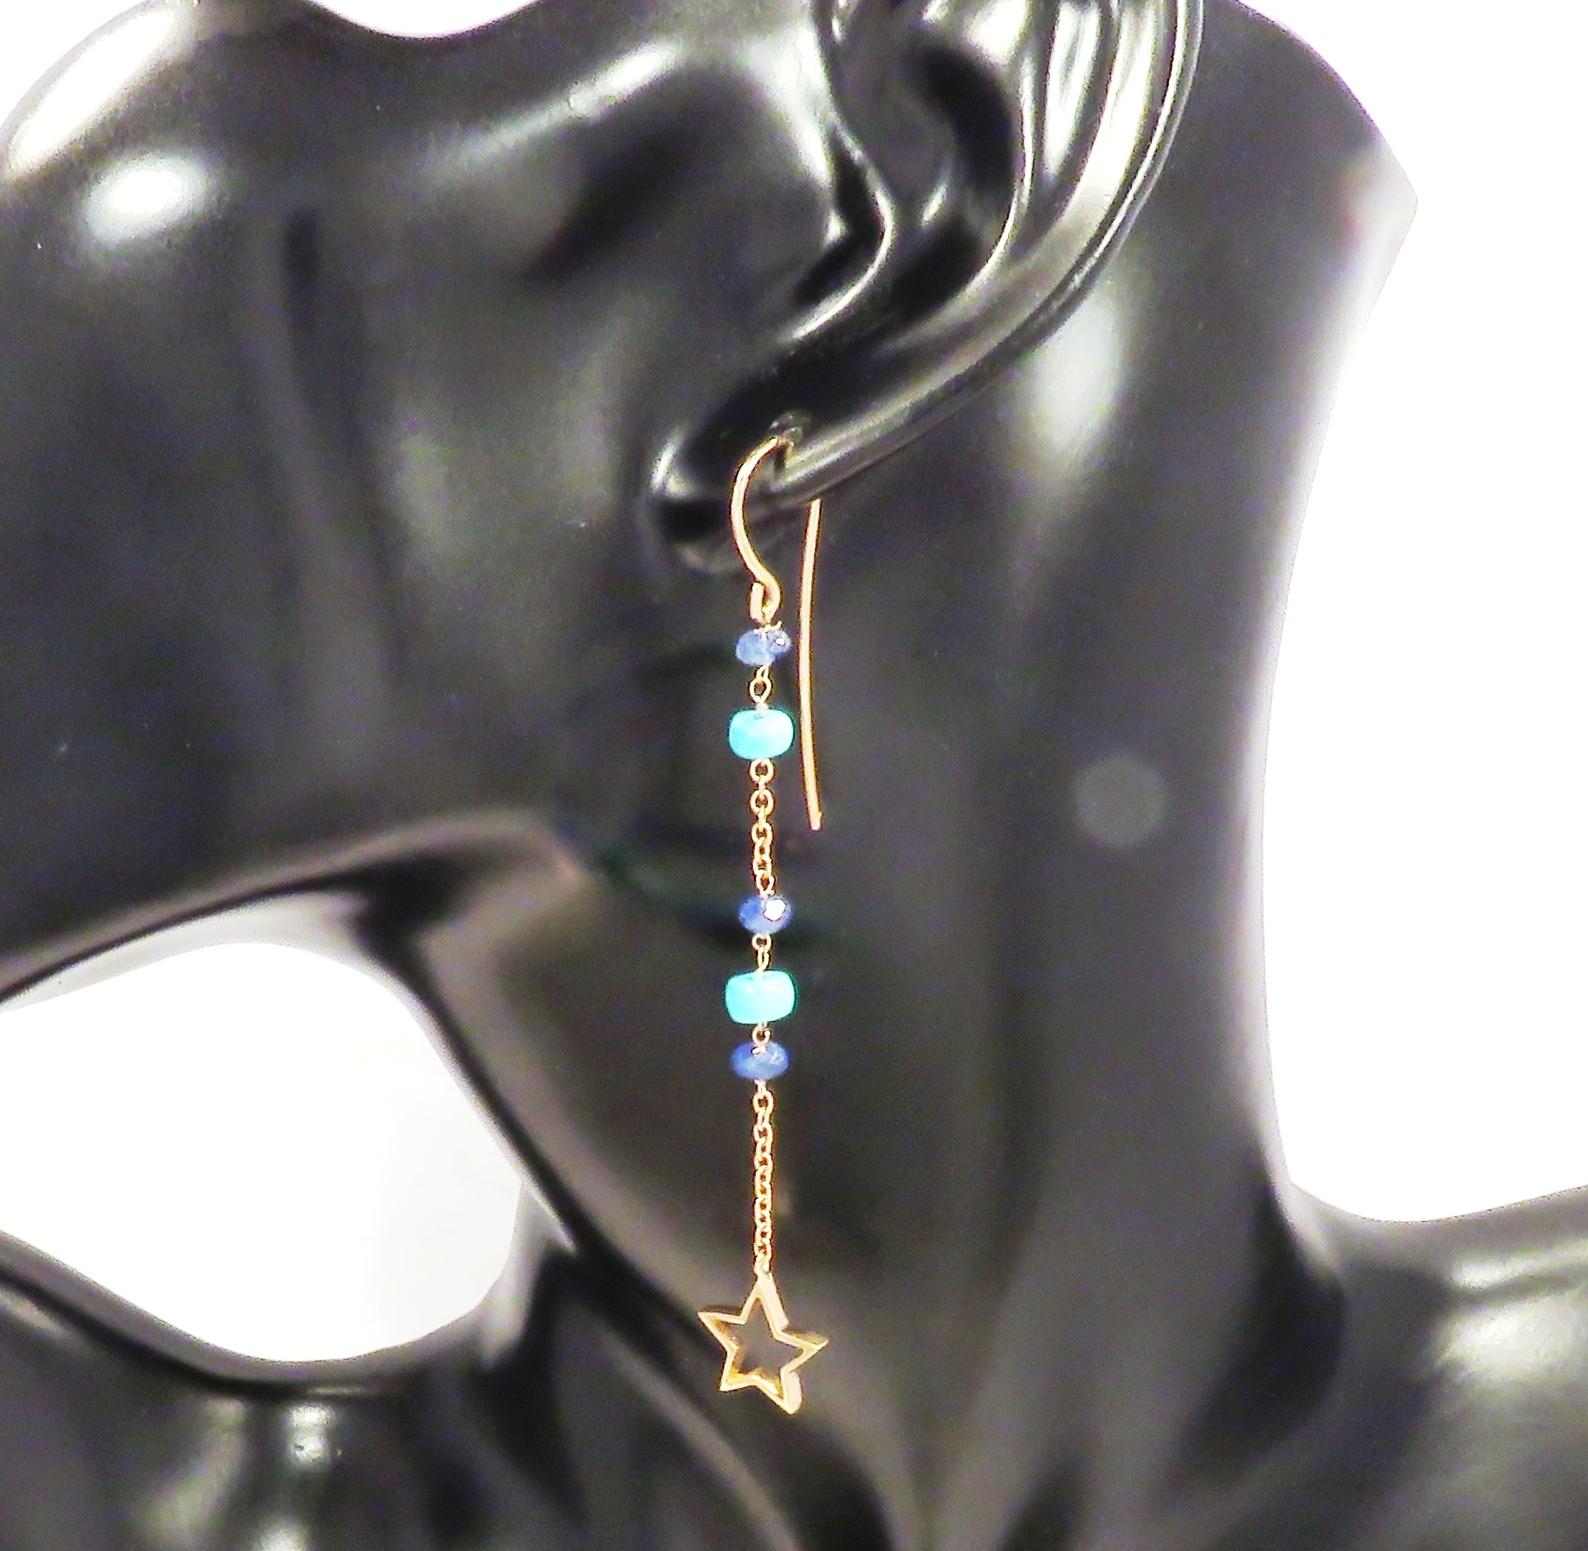 Boucles d'oreilles pendantes avec saphirs naturels et turquoises bleues véritables, ornées d'une breloque en forme d'étoile. Chaque boucle d'oreille est fabriquée à la main en or rose 9 carats avec 4 saphirs taillés en pépite et 3 turquoises